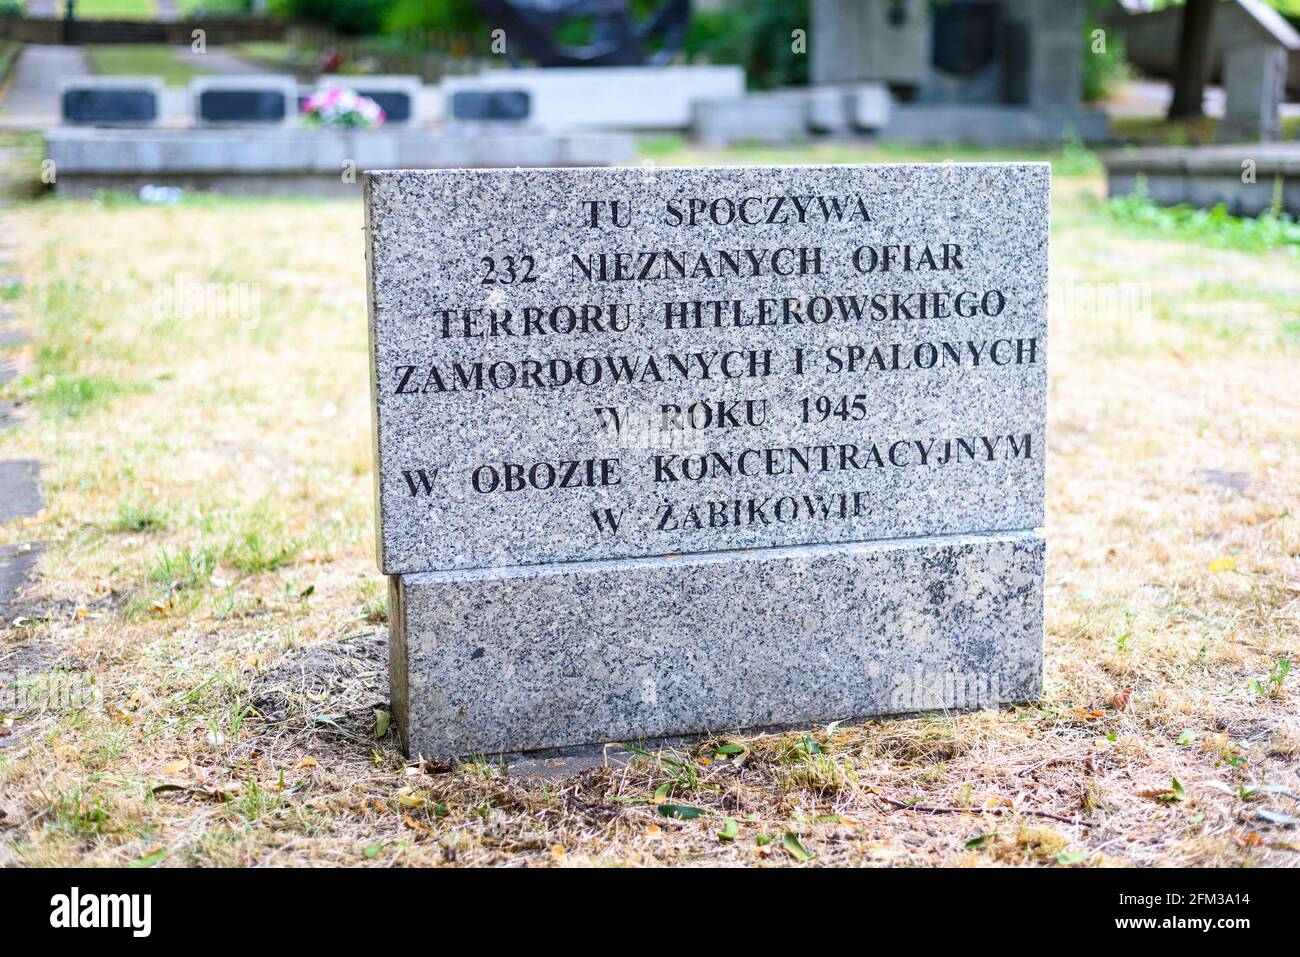 Poznan, wielkopolskie, Poland, 01.05.2021: Gravestone of 232 prisoners of Zabikow concentration camp in Cytadela, Poznan, Poland Stock Photo